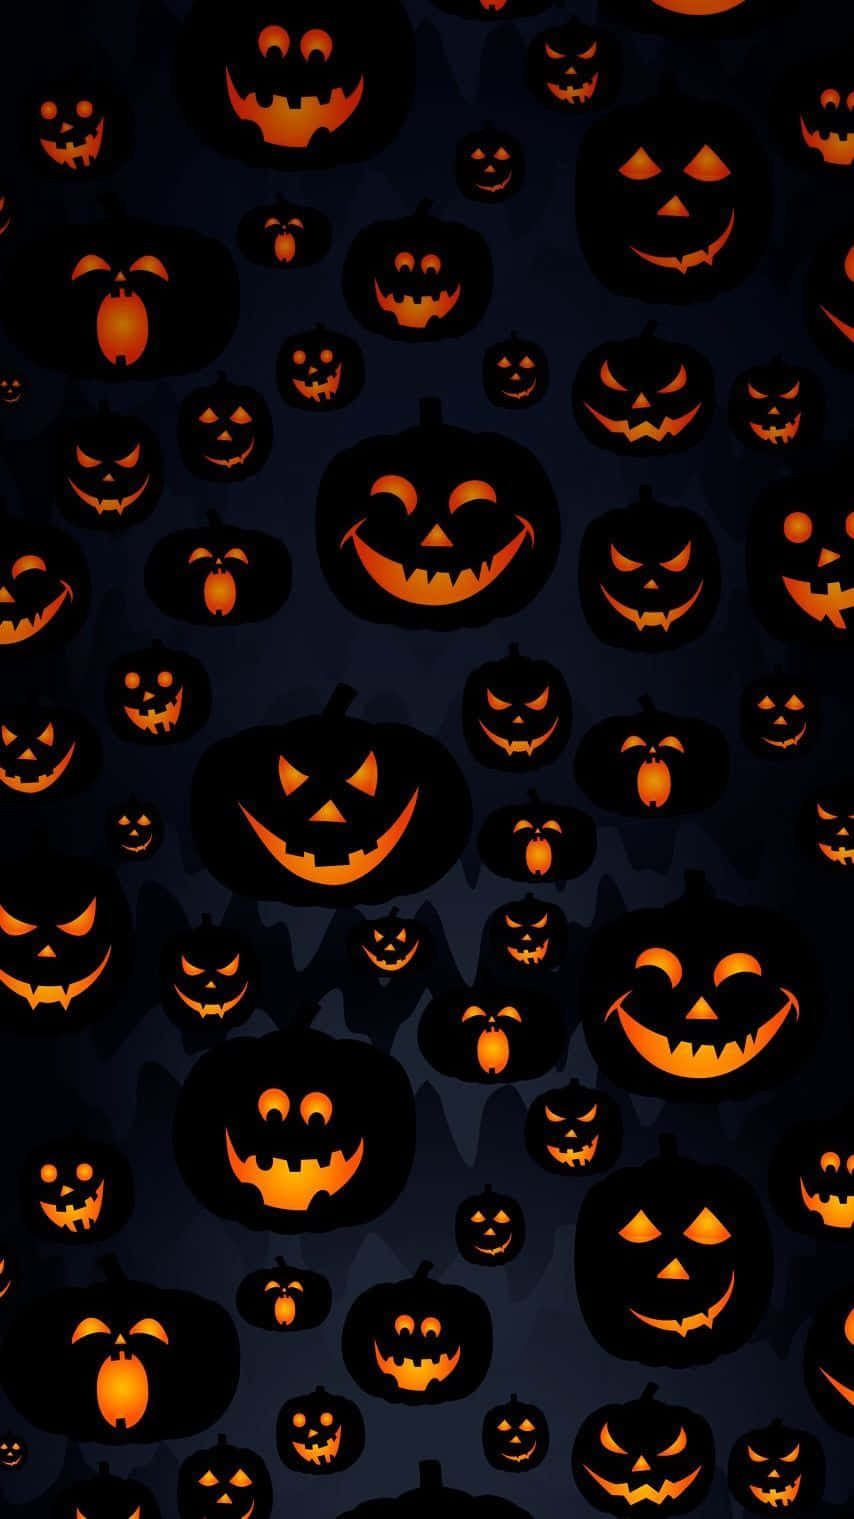 Halloween Pumpkins On A Dark Background Wallpaper